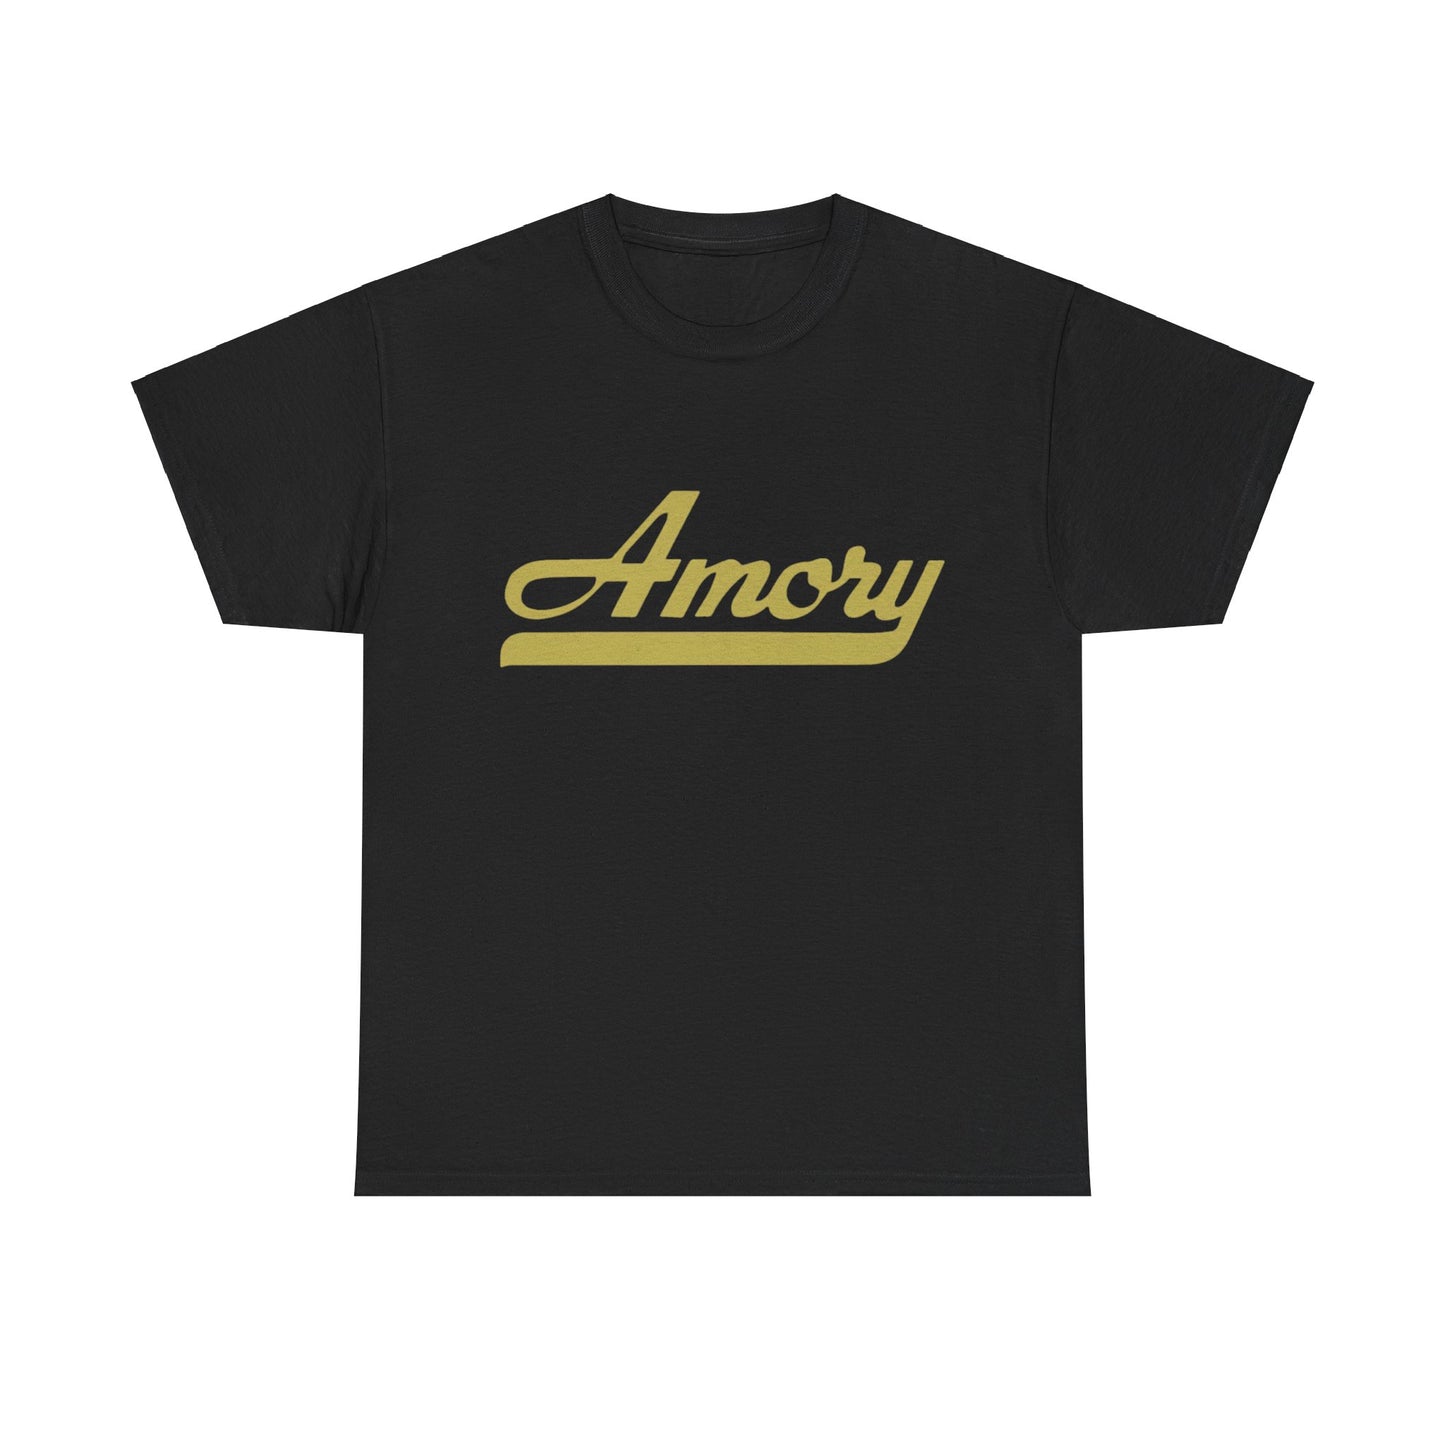 Amory t shirts